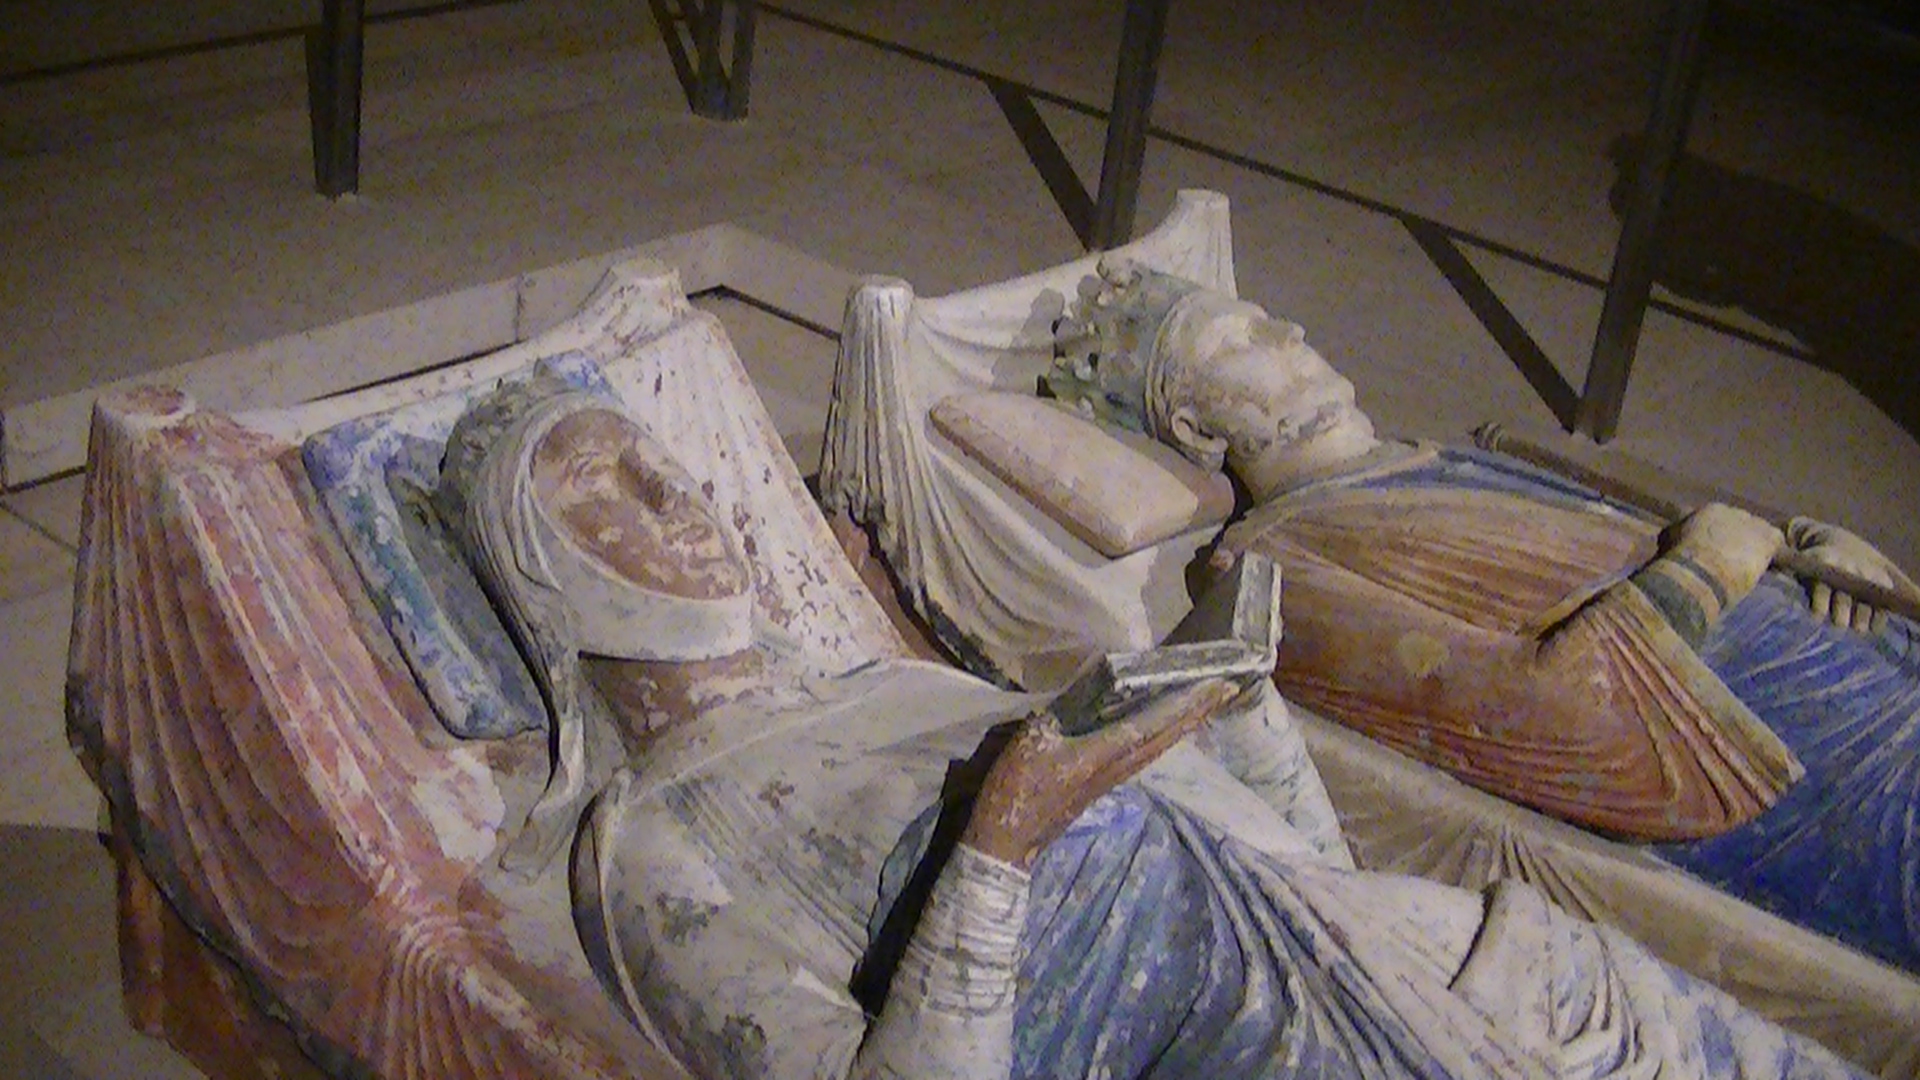  Tombe di Eleonora d'Aquitania ed Enrico II, conte di Anjou e re d'Inghilterra. Abbazia di Fontenvrault, XII secolo. 
